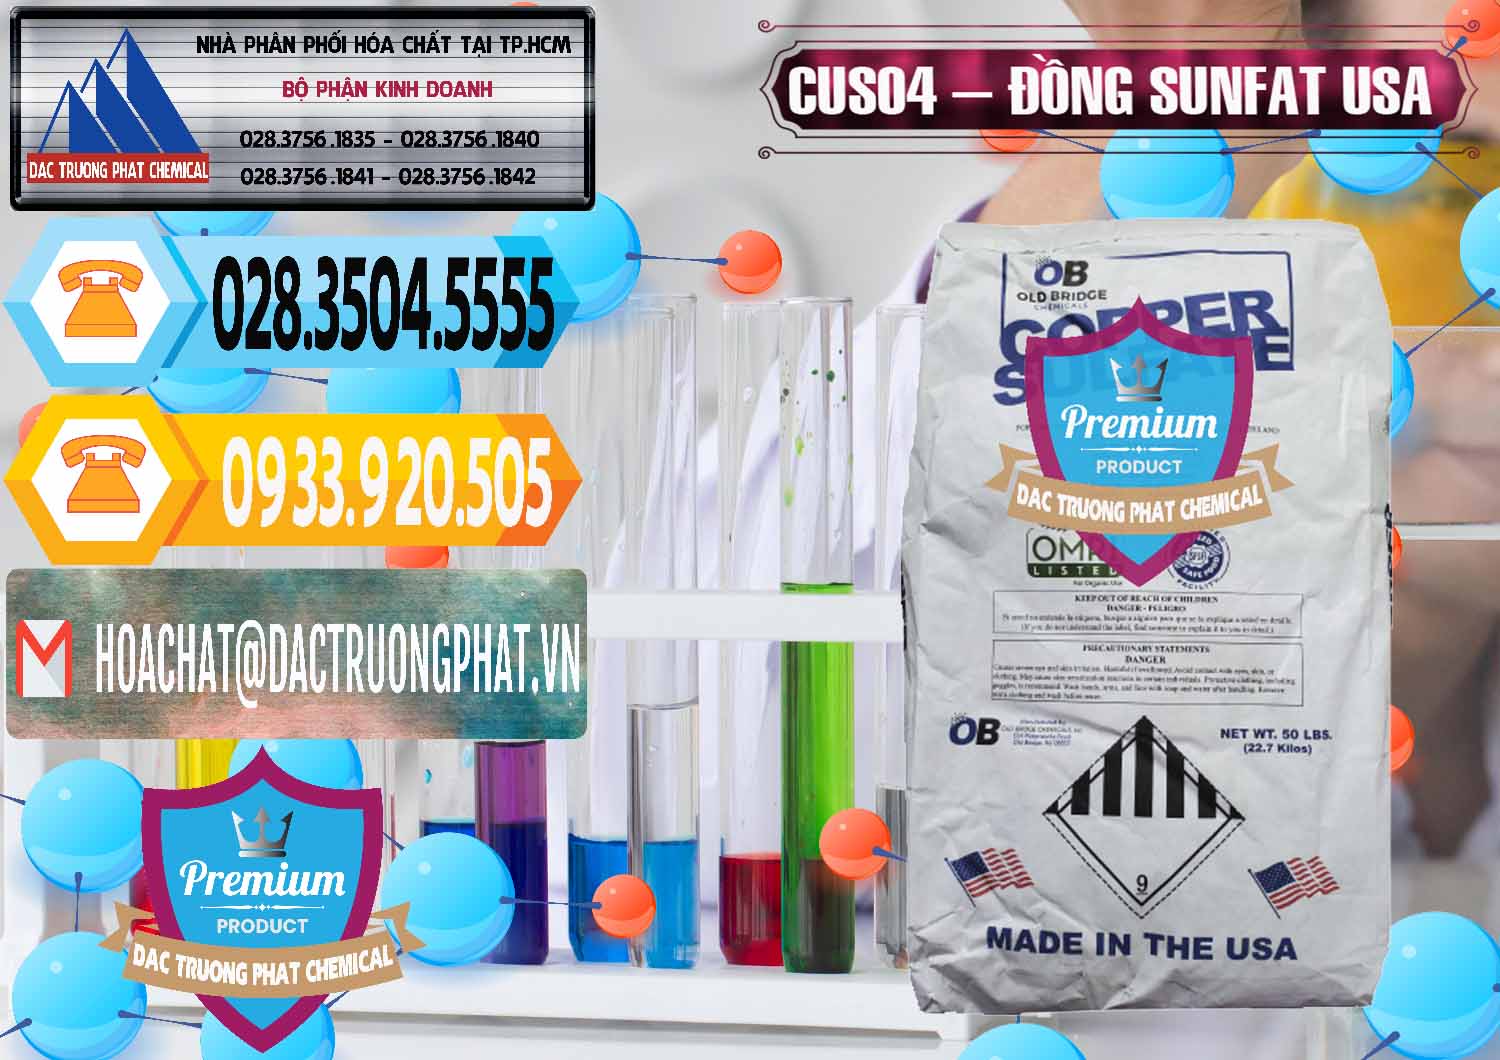 Cty phân phối & bán CuSO4 – Đồng Sunfat Mỹ USA - 0479 - Công ty bán _ cung cấp hóa chất tại TP.HCM - hoachattayrua.net